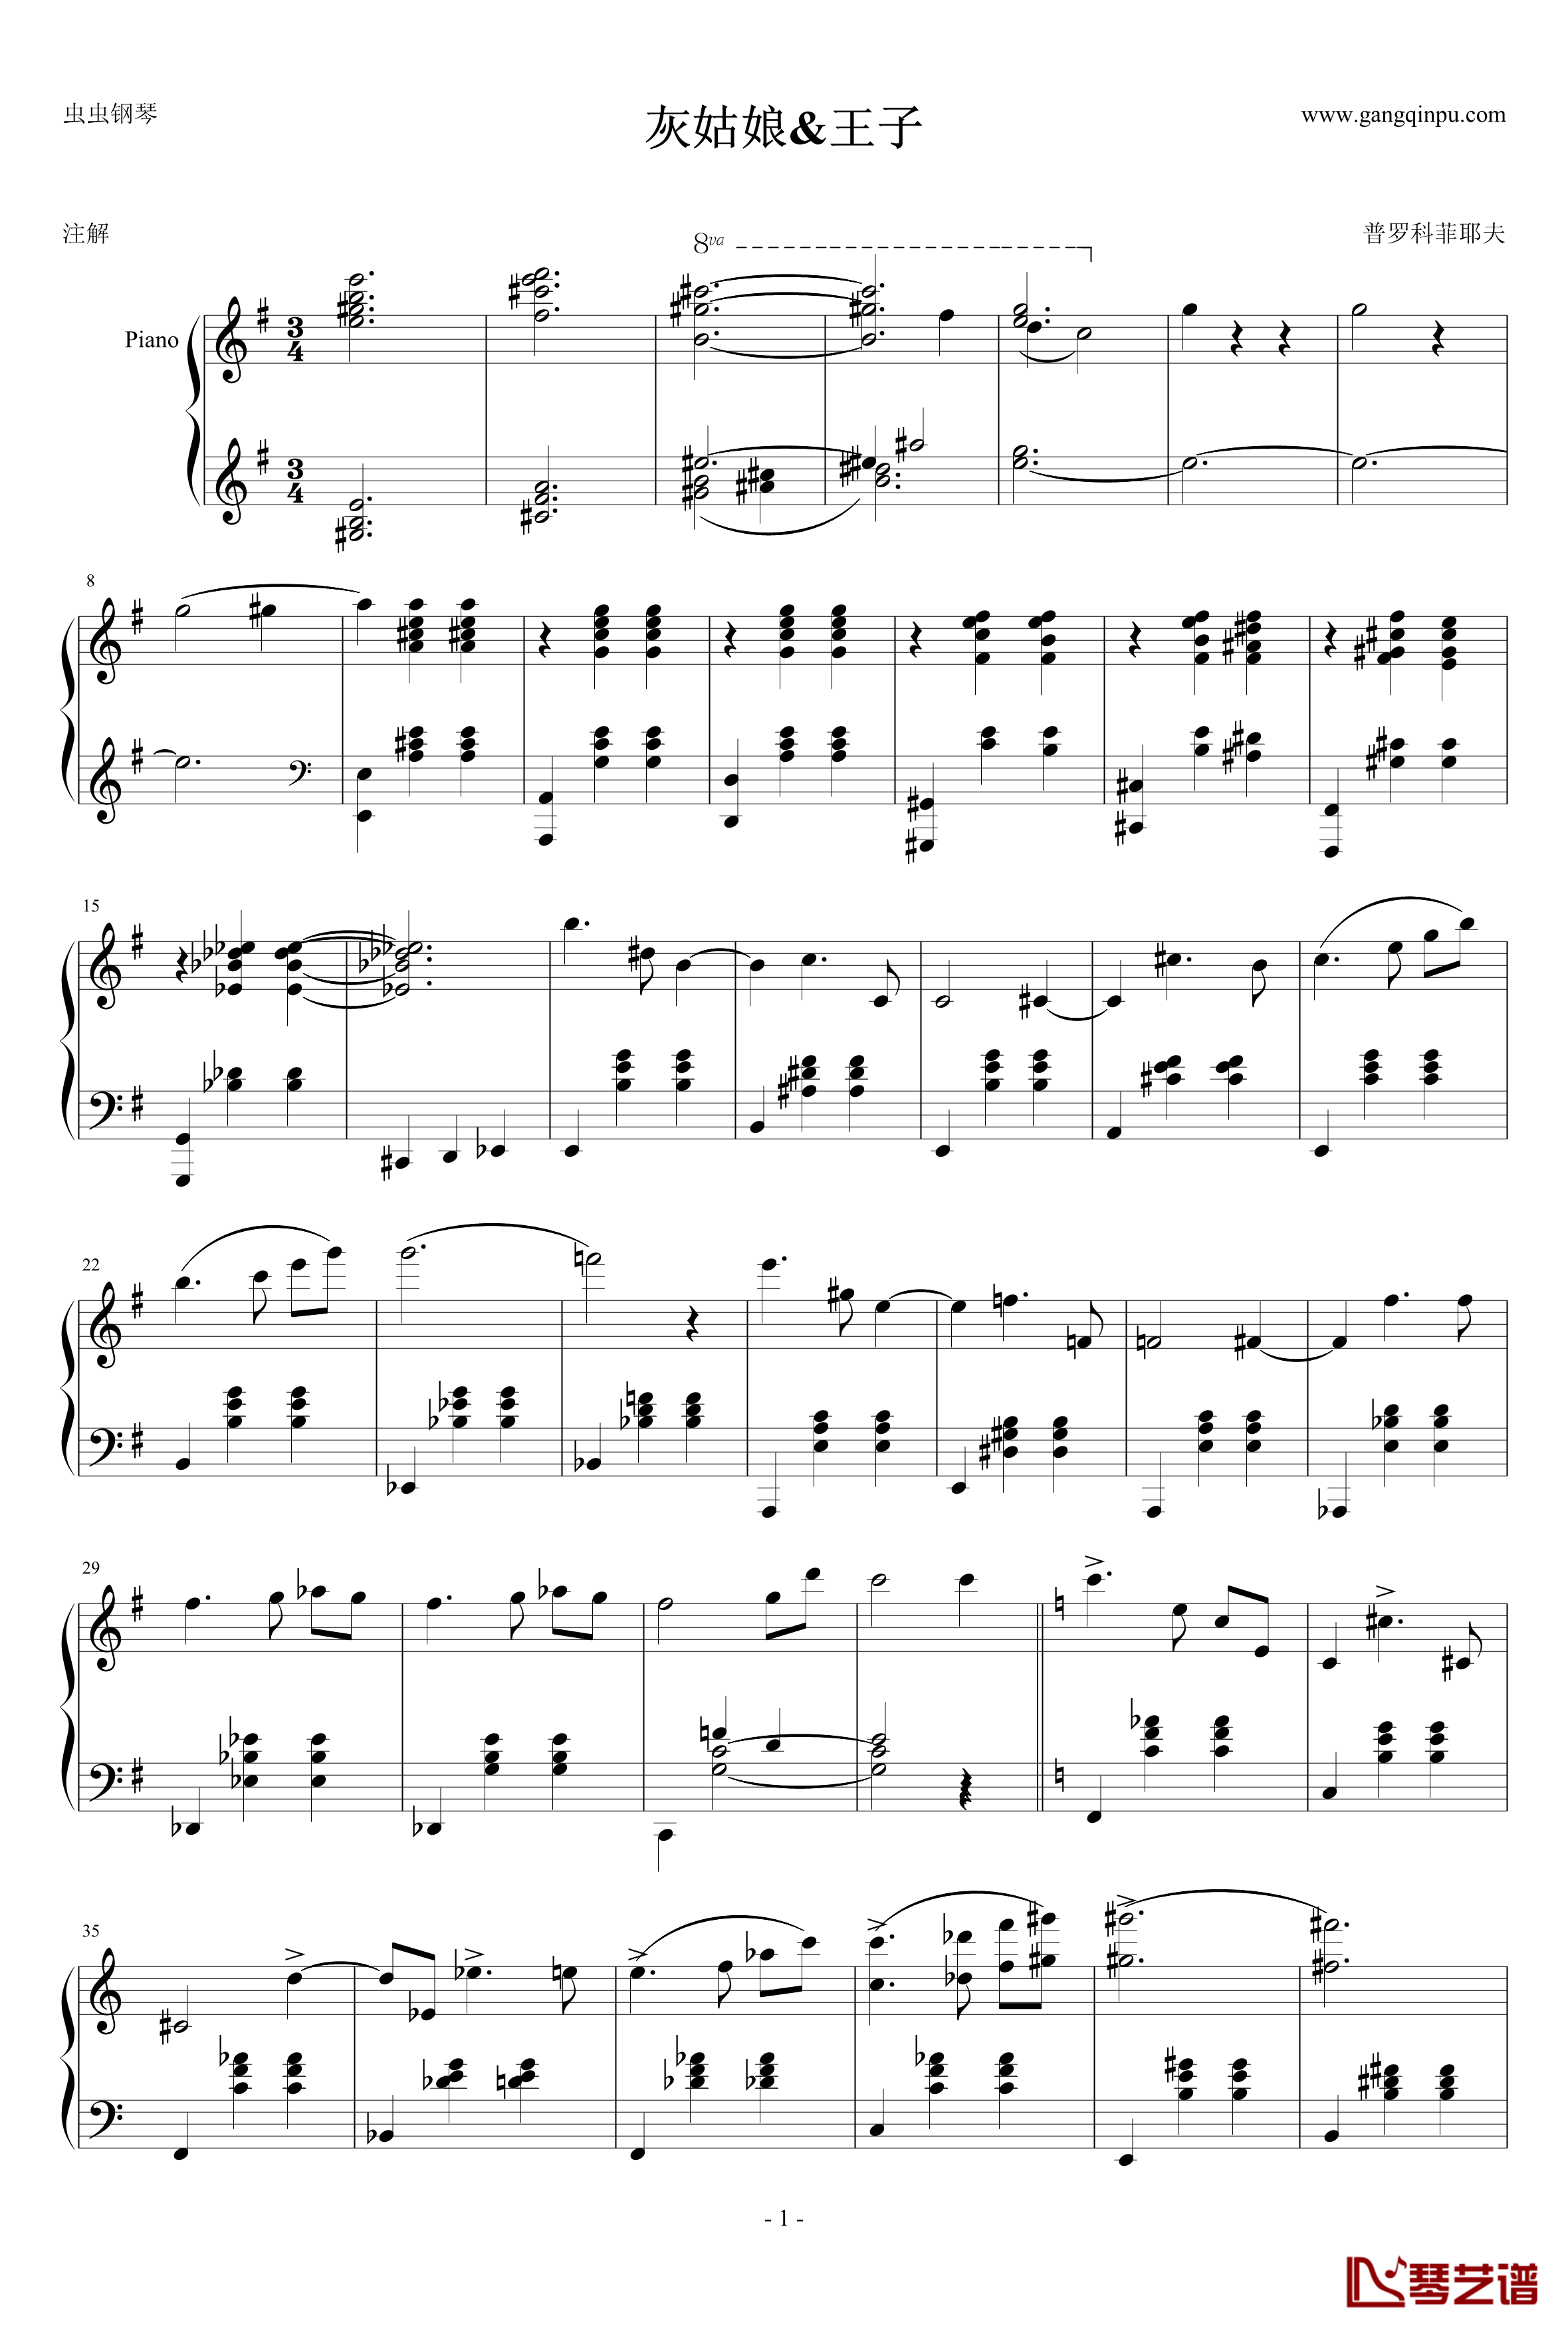 圆舞曲钢琴谱-灰姑娘-普罗科非耶夫1